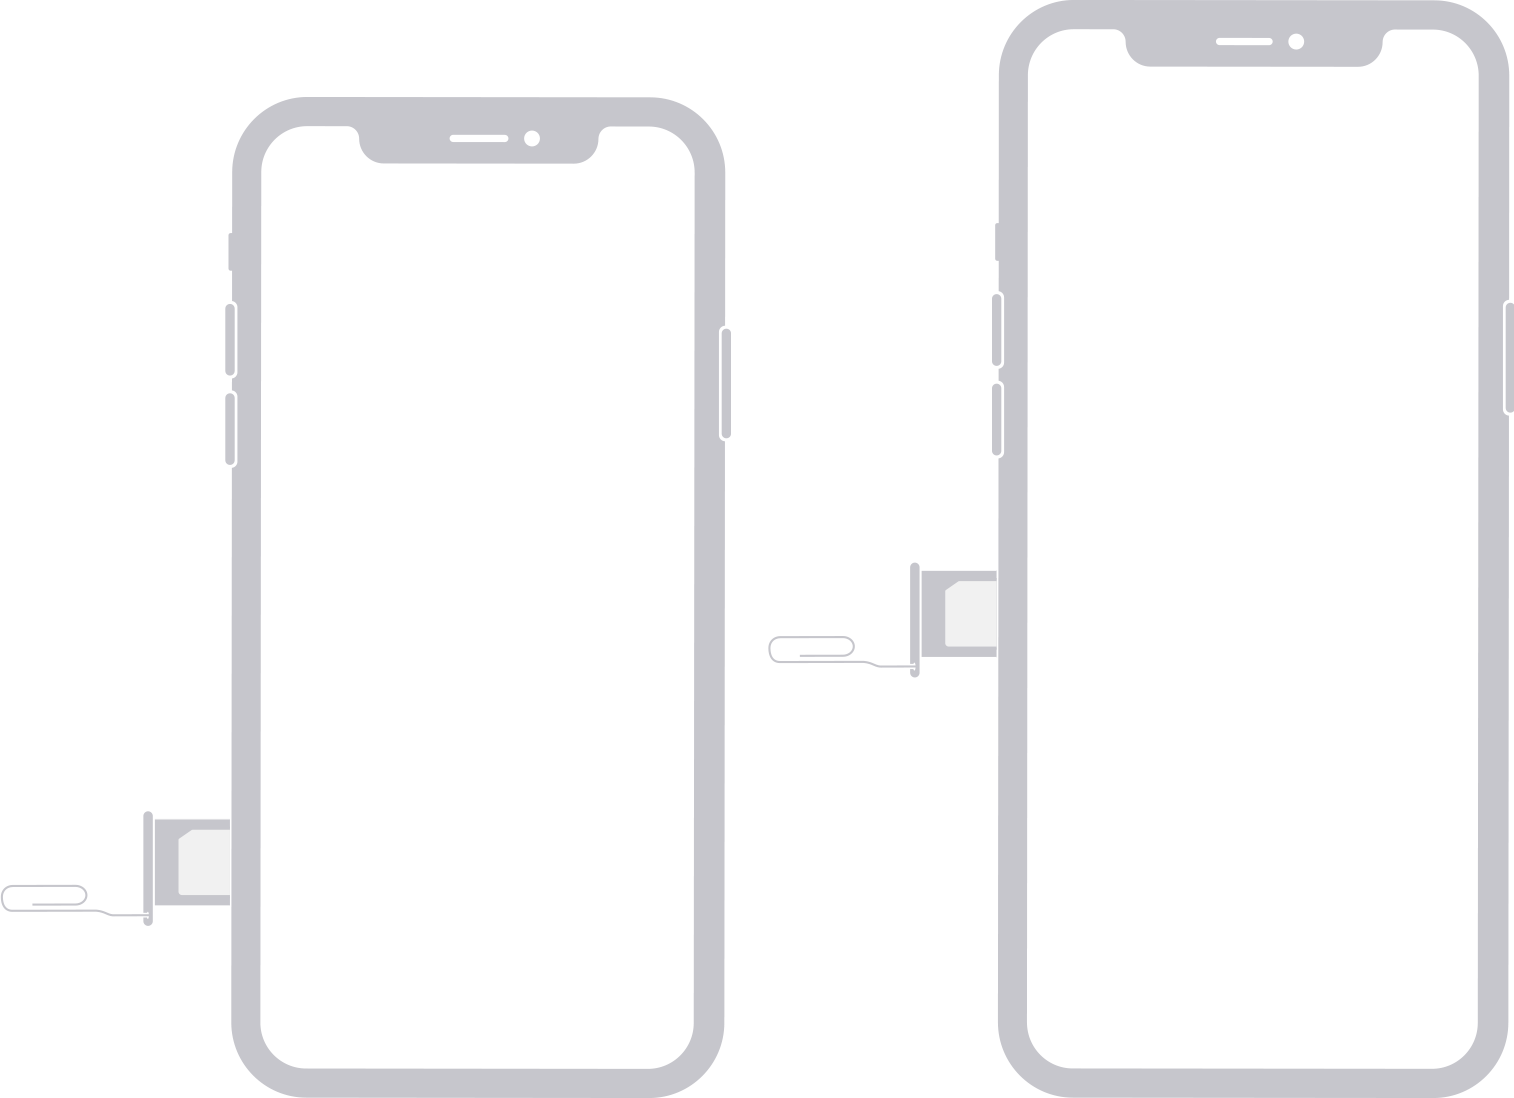 Εικόνα που δείχνει την κάρτα SIM στην αριστερή πλευρά του iPhone